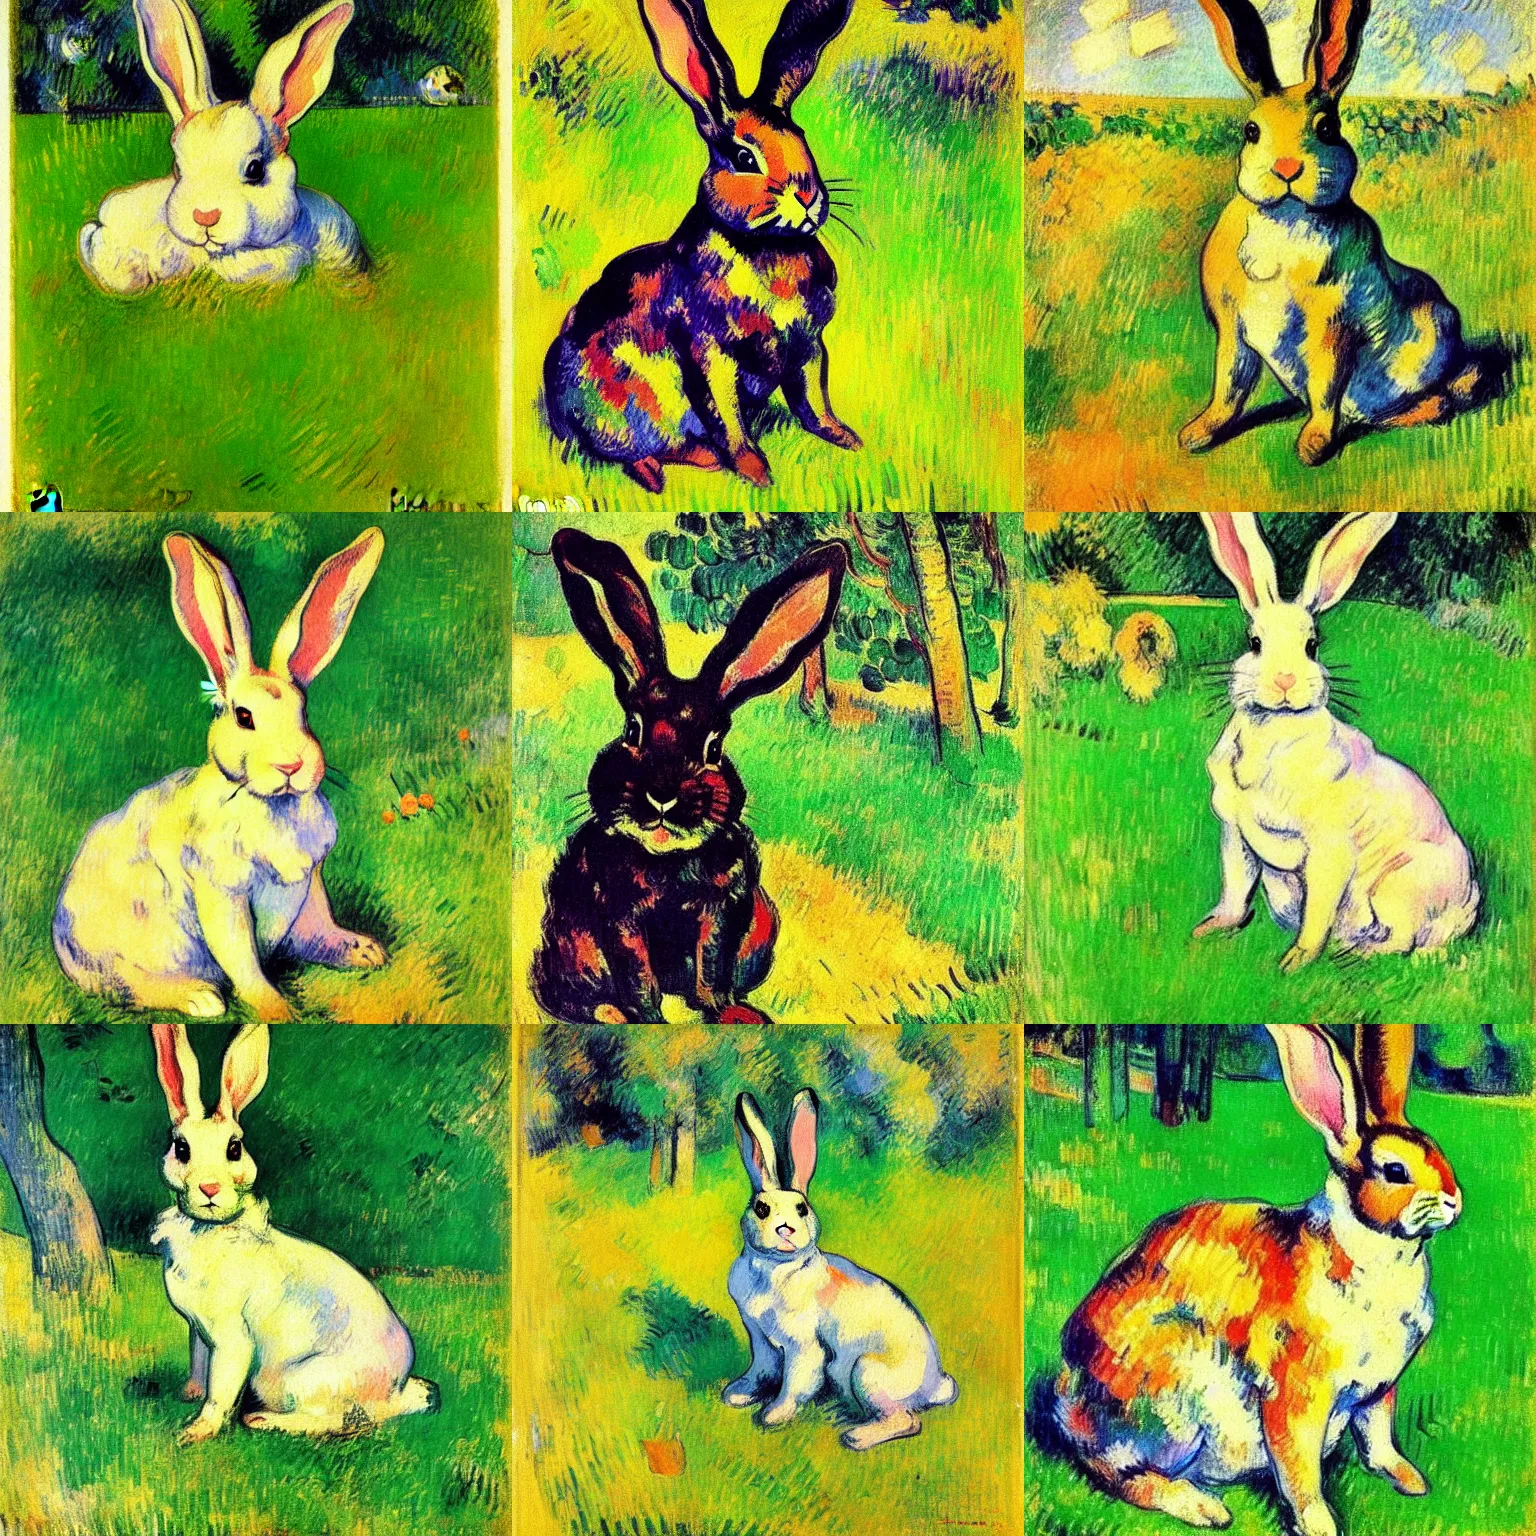 Prompt: beautiful cute portrait post - impressionist painting of a bunny in the grass, by henri de toulouse - lautrec, camille pissarro, paul cezanne, henri rousseau, vincent van gogh, henri - edmond